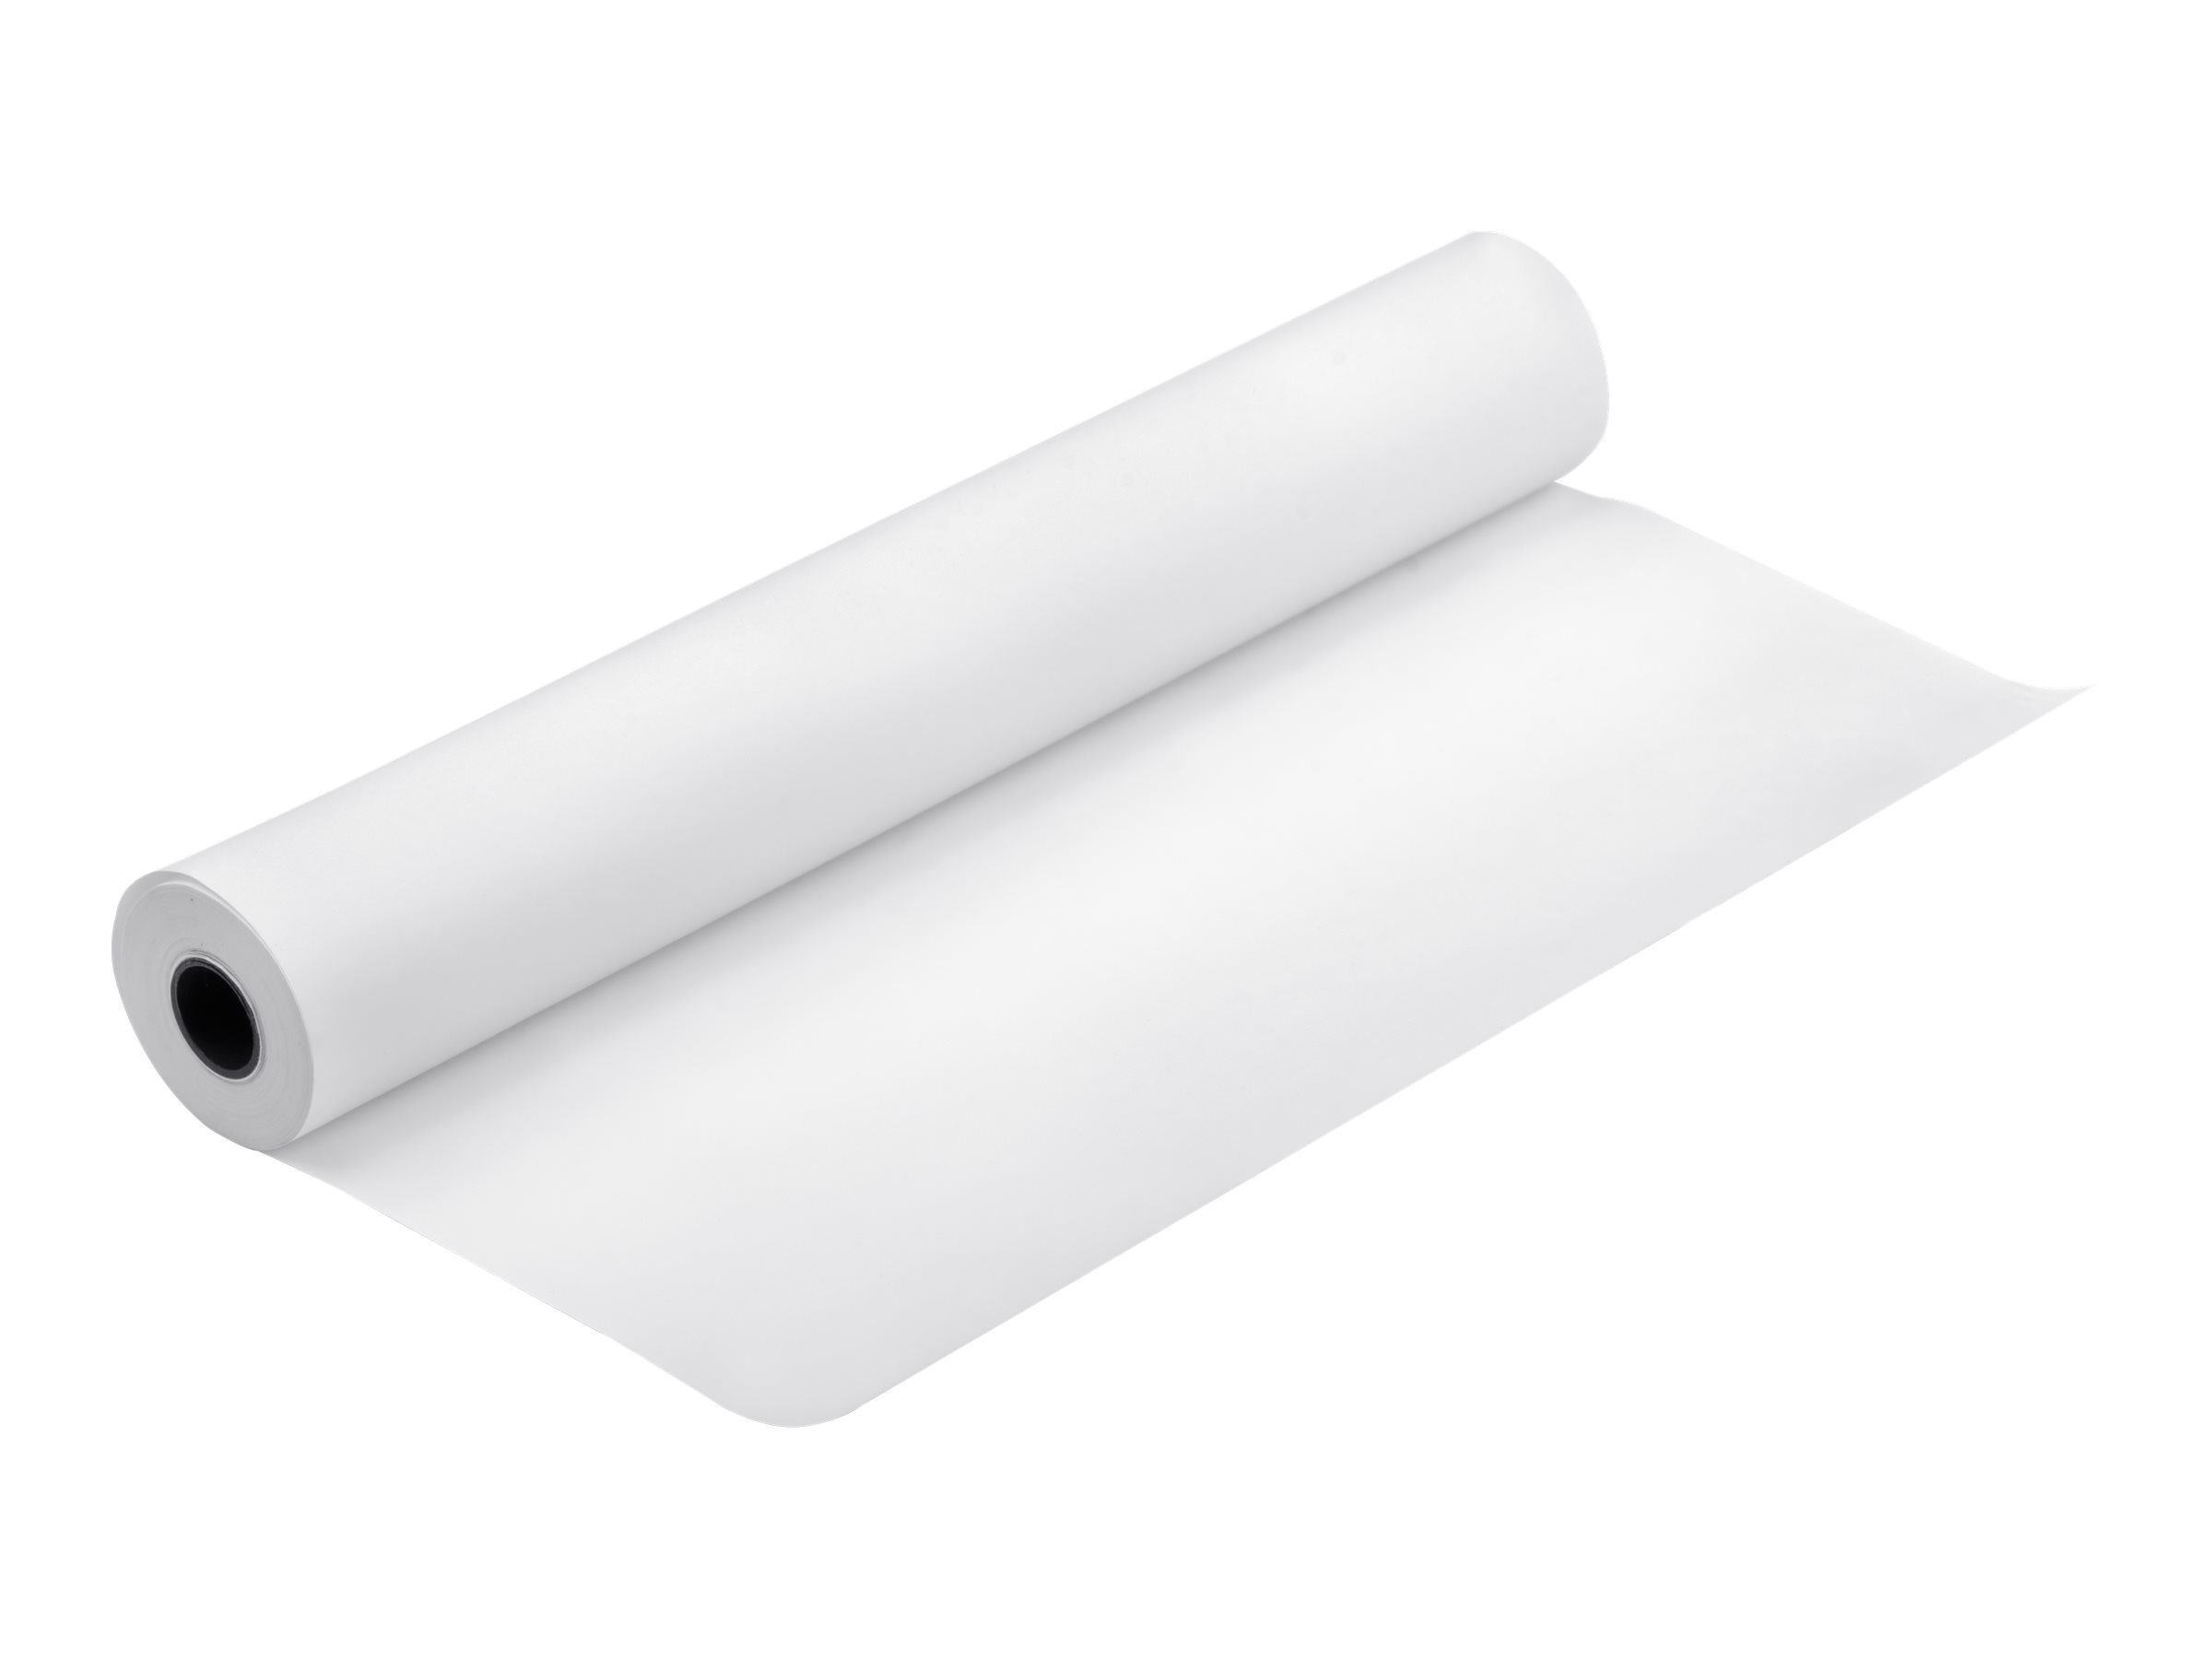 Epson Bond Paper White 80 - Weiß - Rolle (84,1 cm x 50 m)